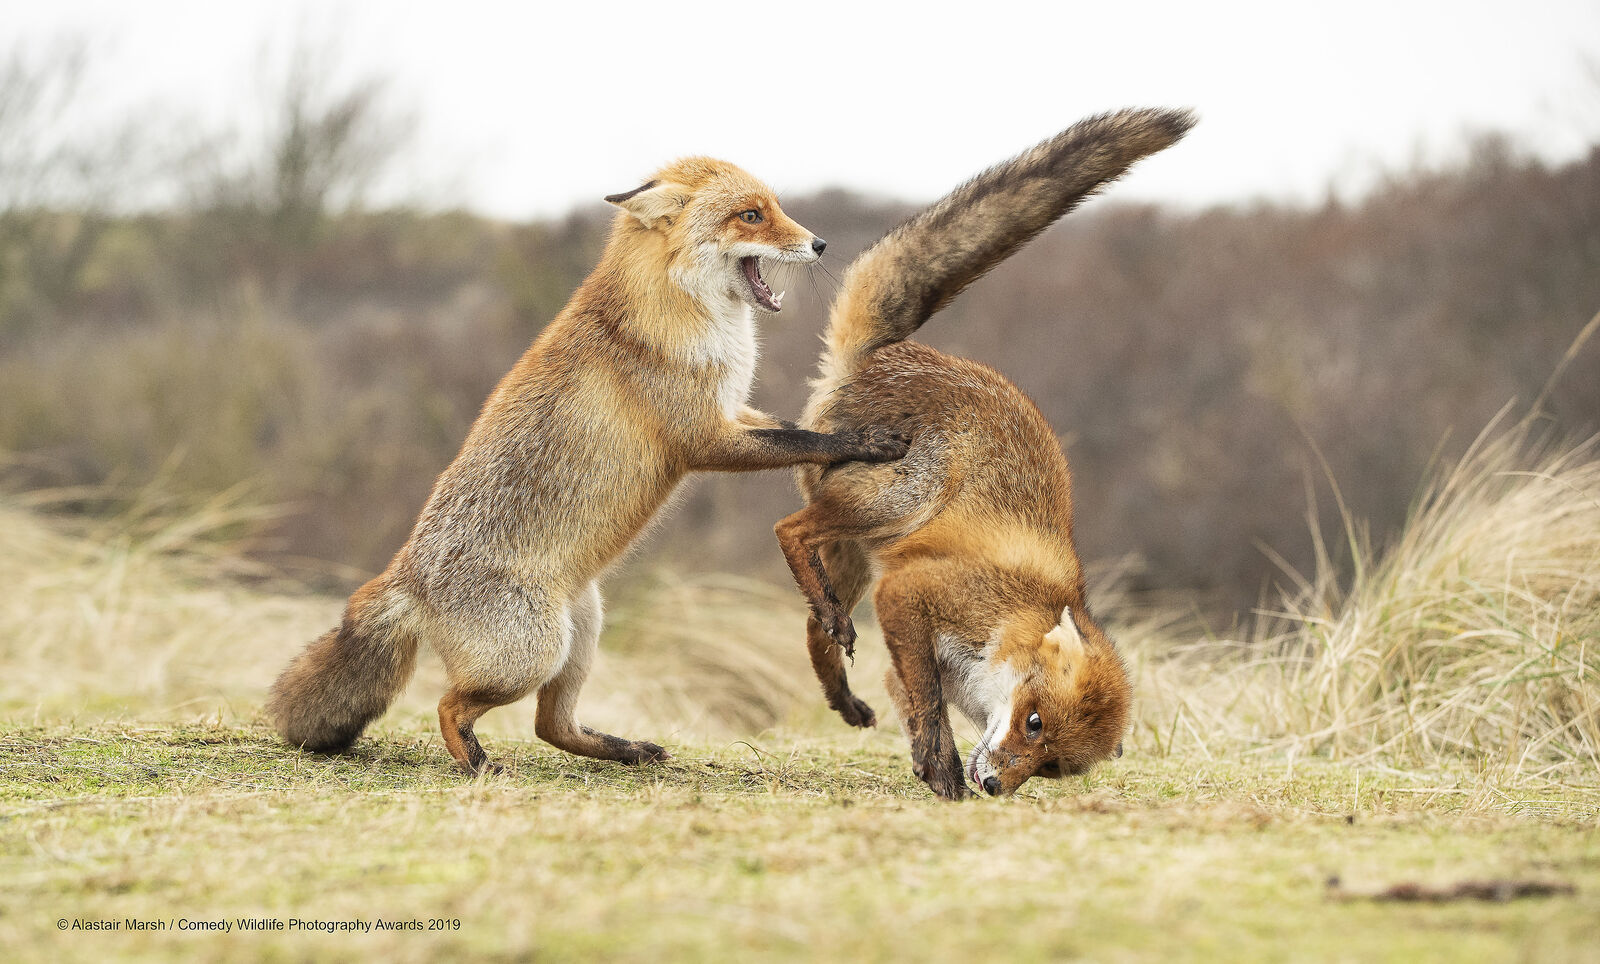 "Вальс пошёл не так". Фото: Alastair Marsh / Comedy Wildlife Photography